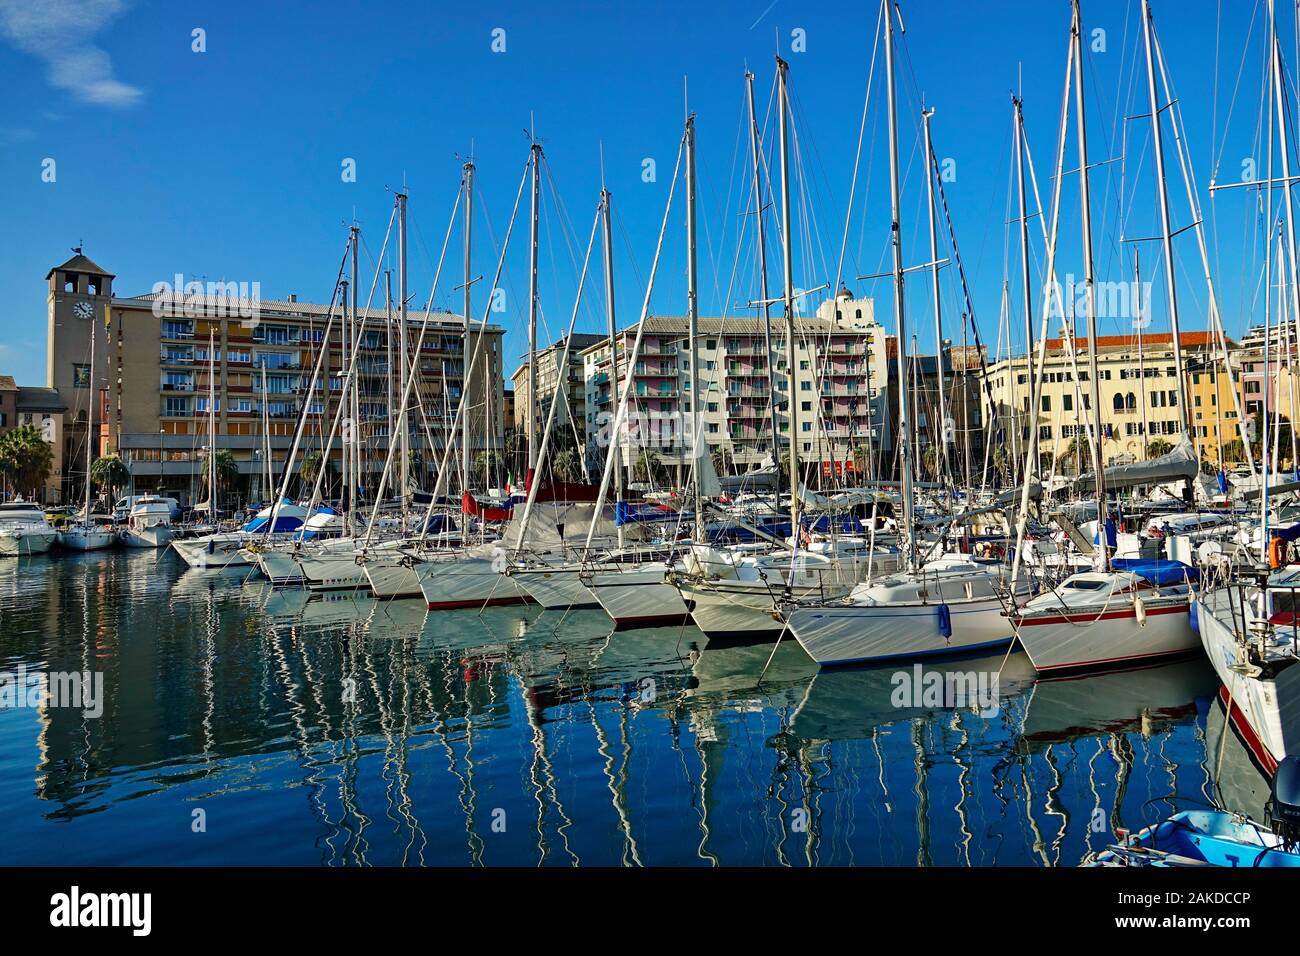 Paesaggio di Savona e barche a vela nel porto. Savona, Italia - Gennaio 2020 Foto Stock